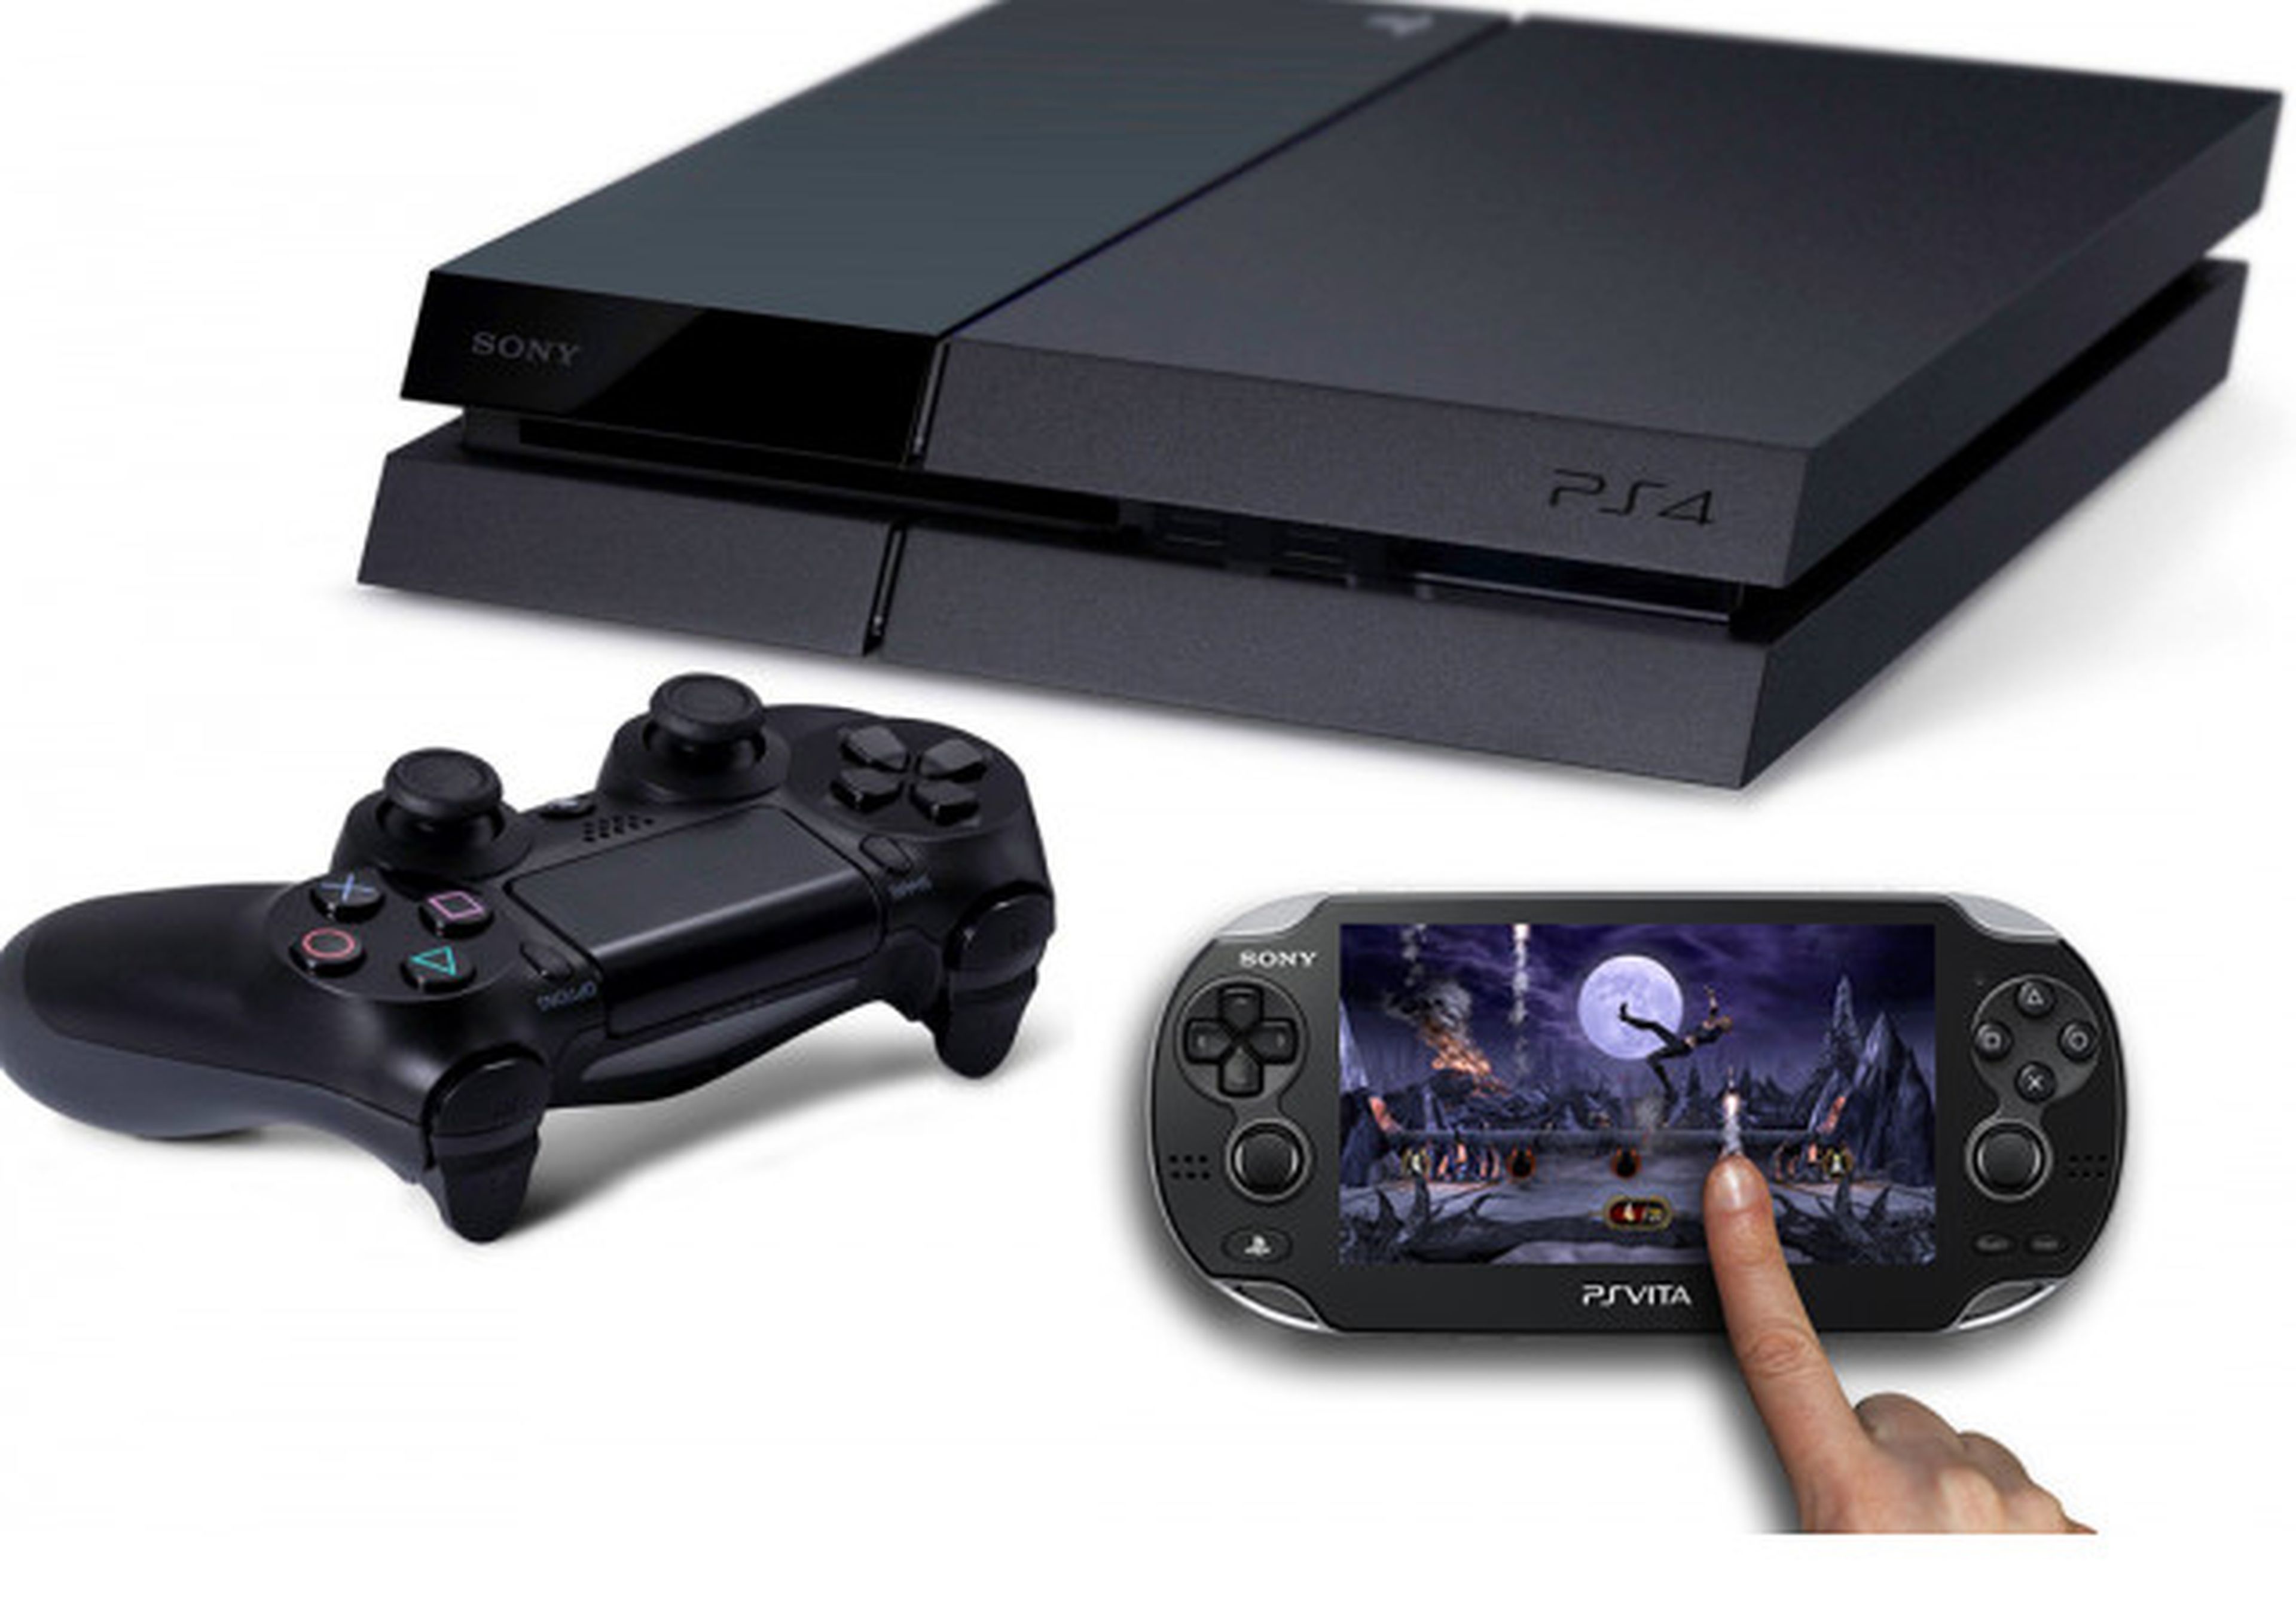 El chat cruzado será compatible entre PlayStation 4 y PSVita